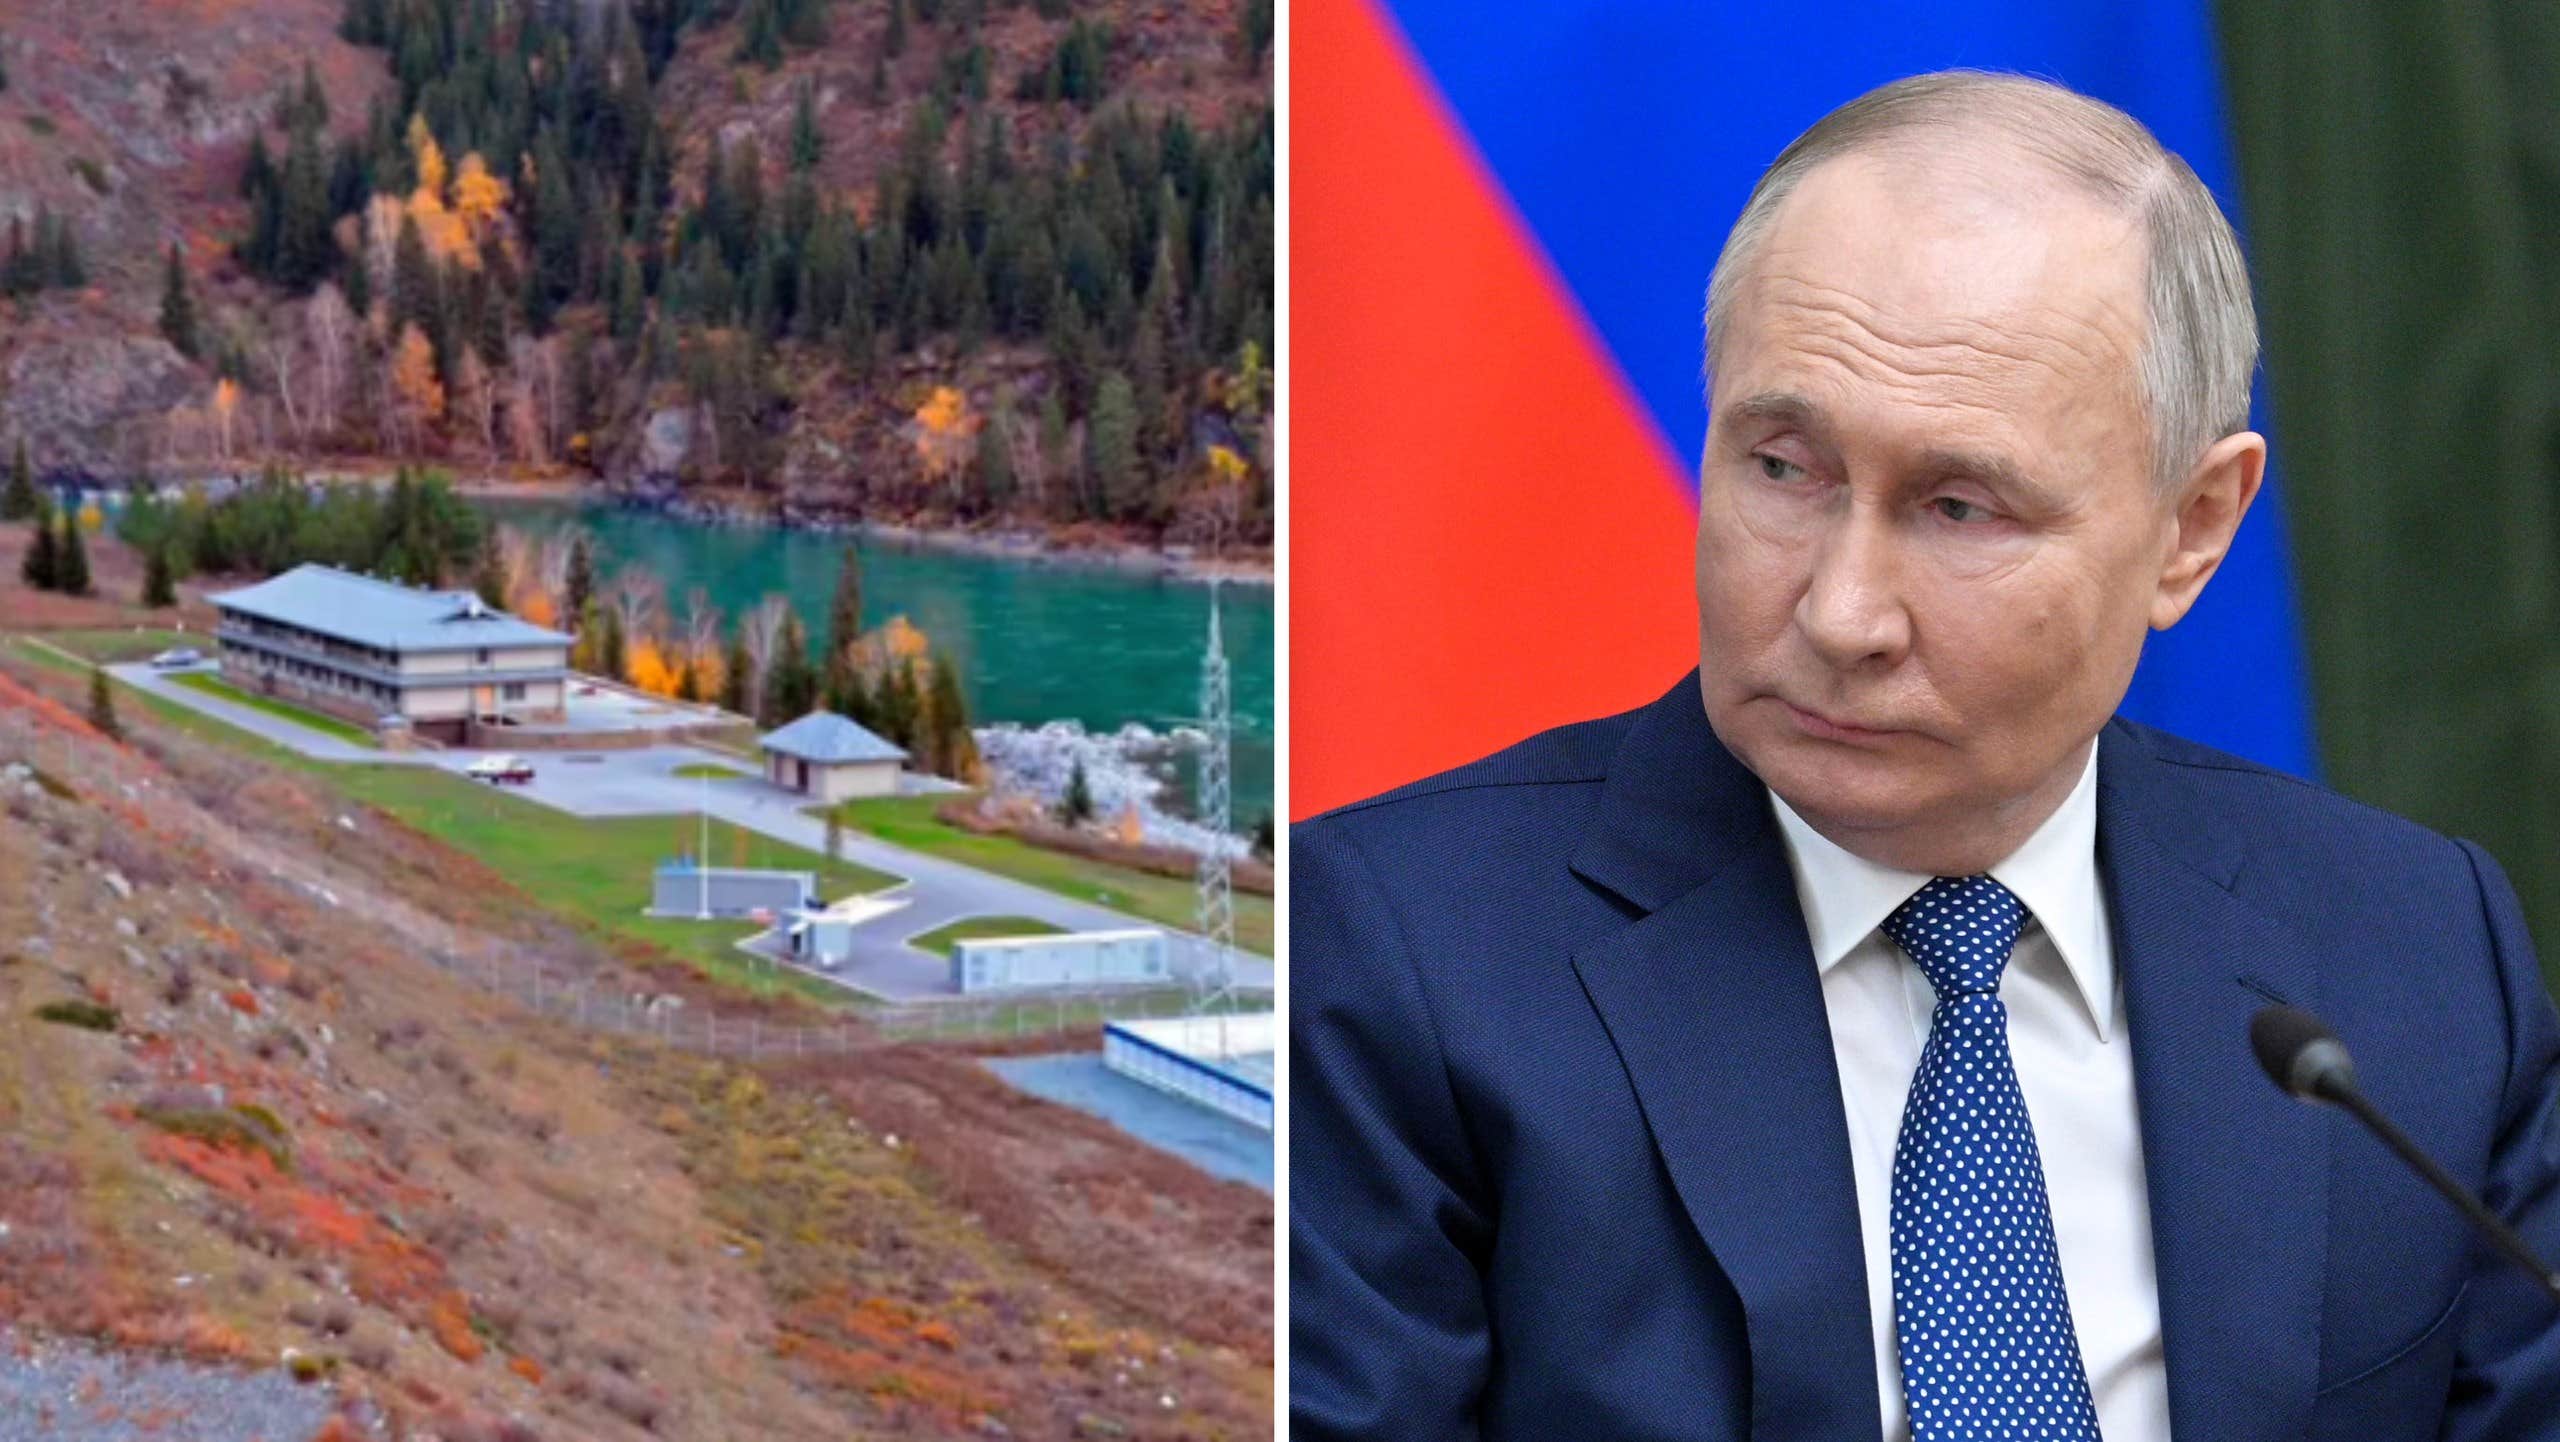 Dettagli: Putin conserva il cibo nel suo bunker privato  il mondo